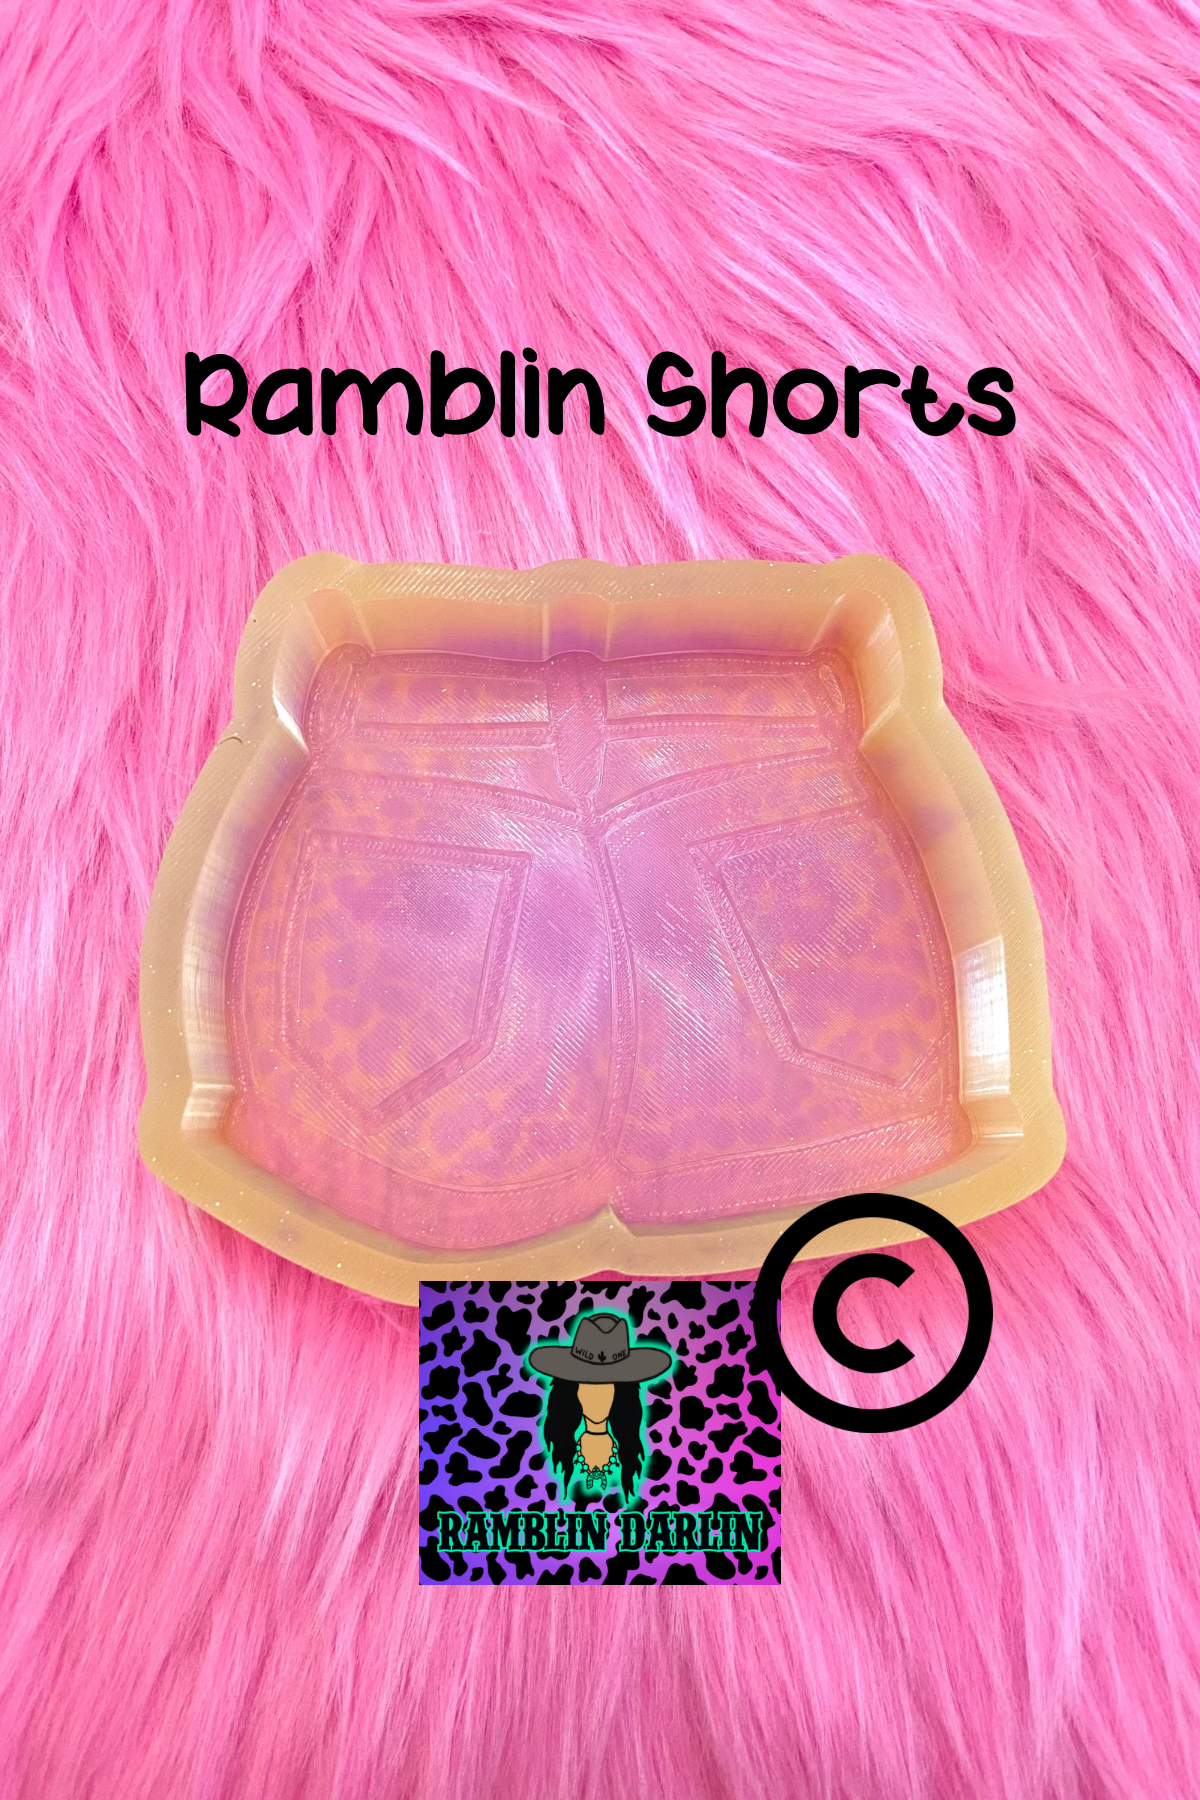 Ramblin Shorts Mold ©️